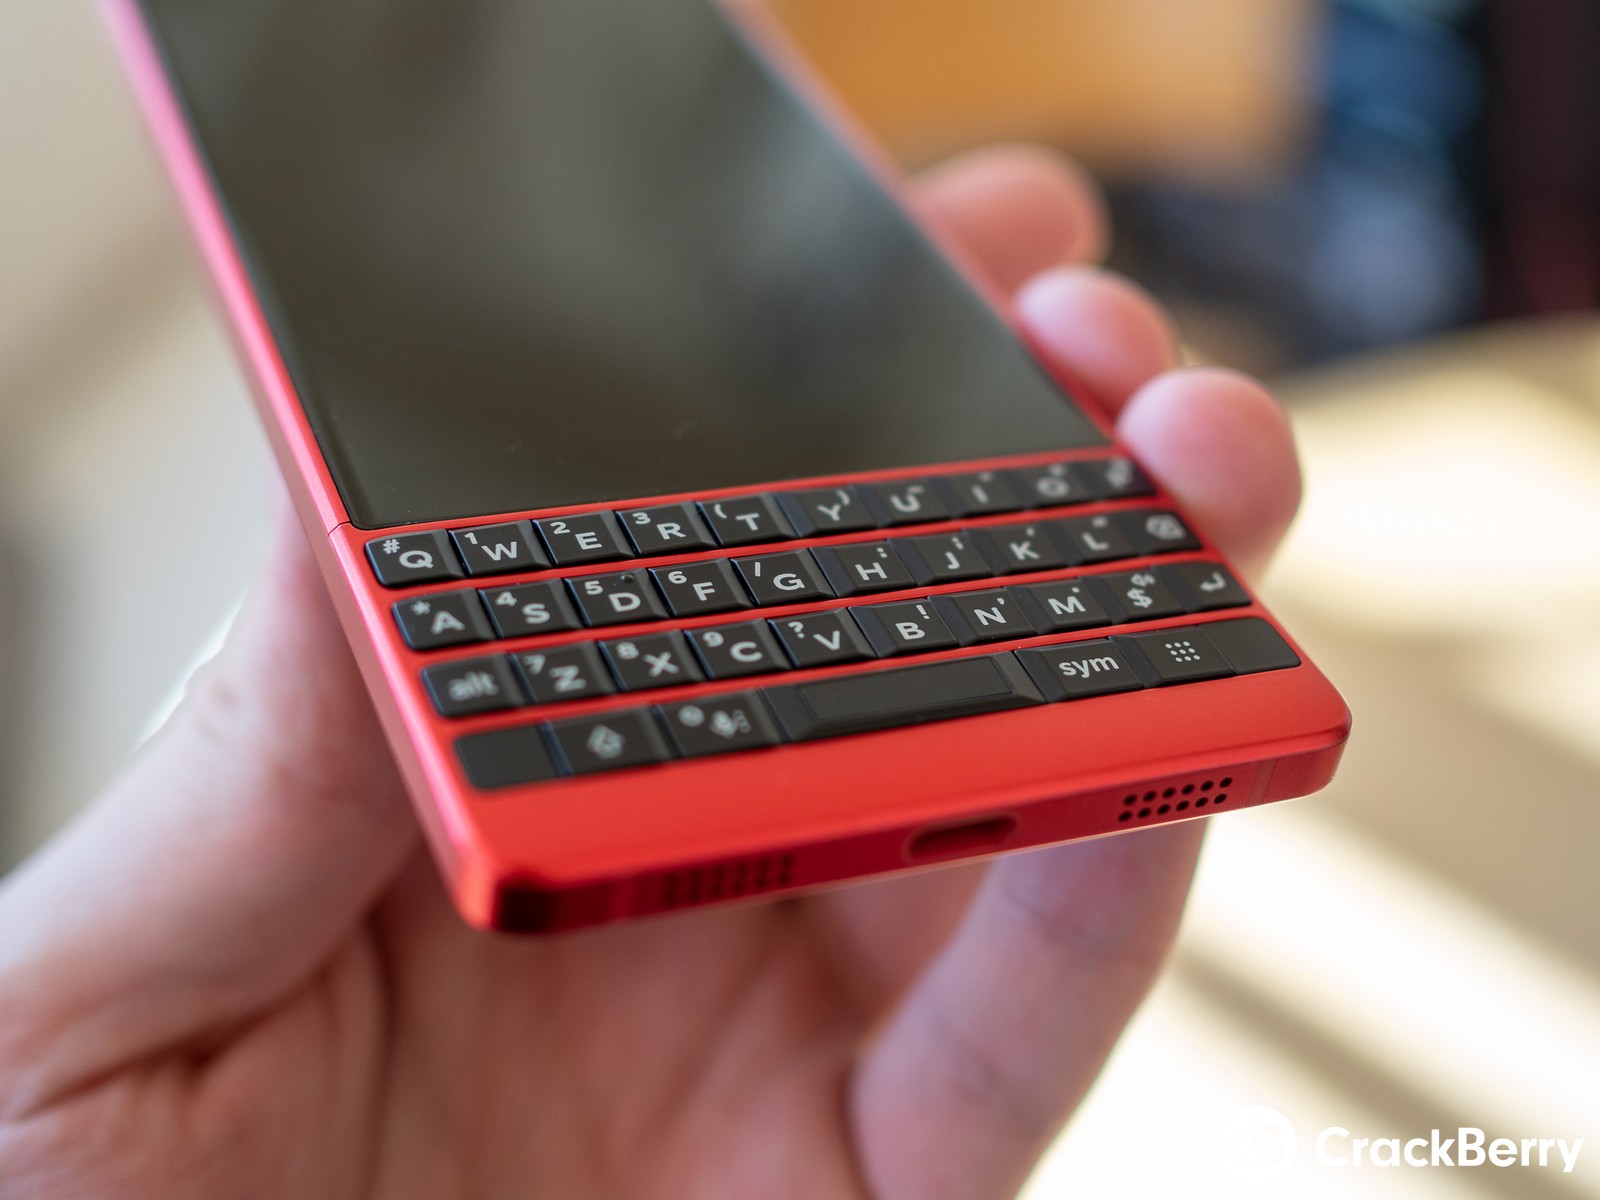 [MWC 2019] BlackBerry giới thiệu KEY2 Red Edition,
phiên bản đặc biệt của KEY2